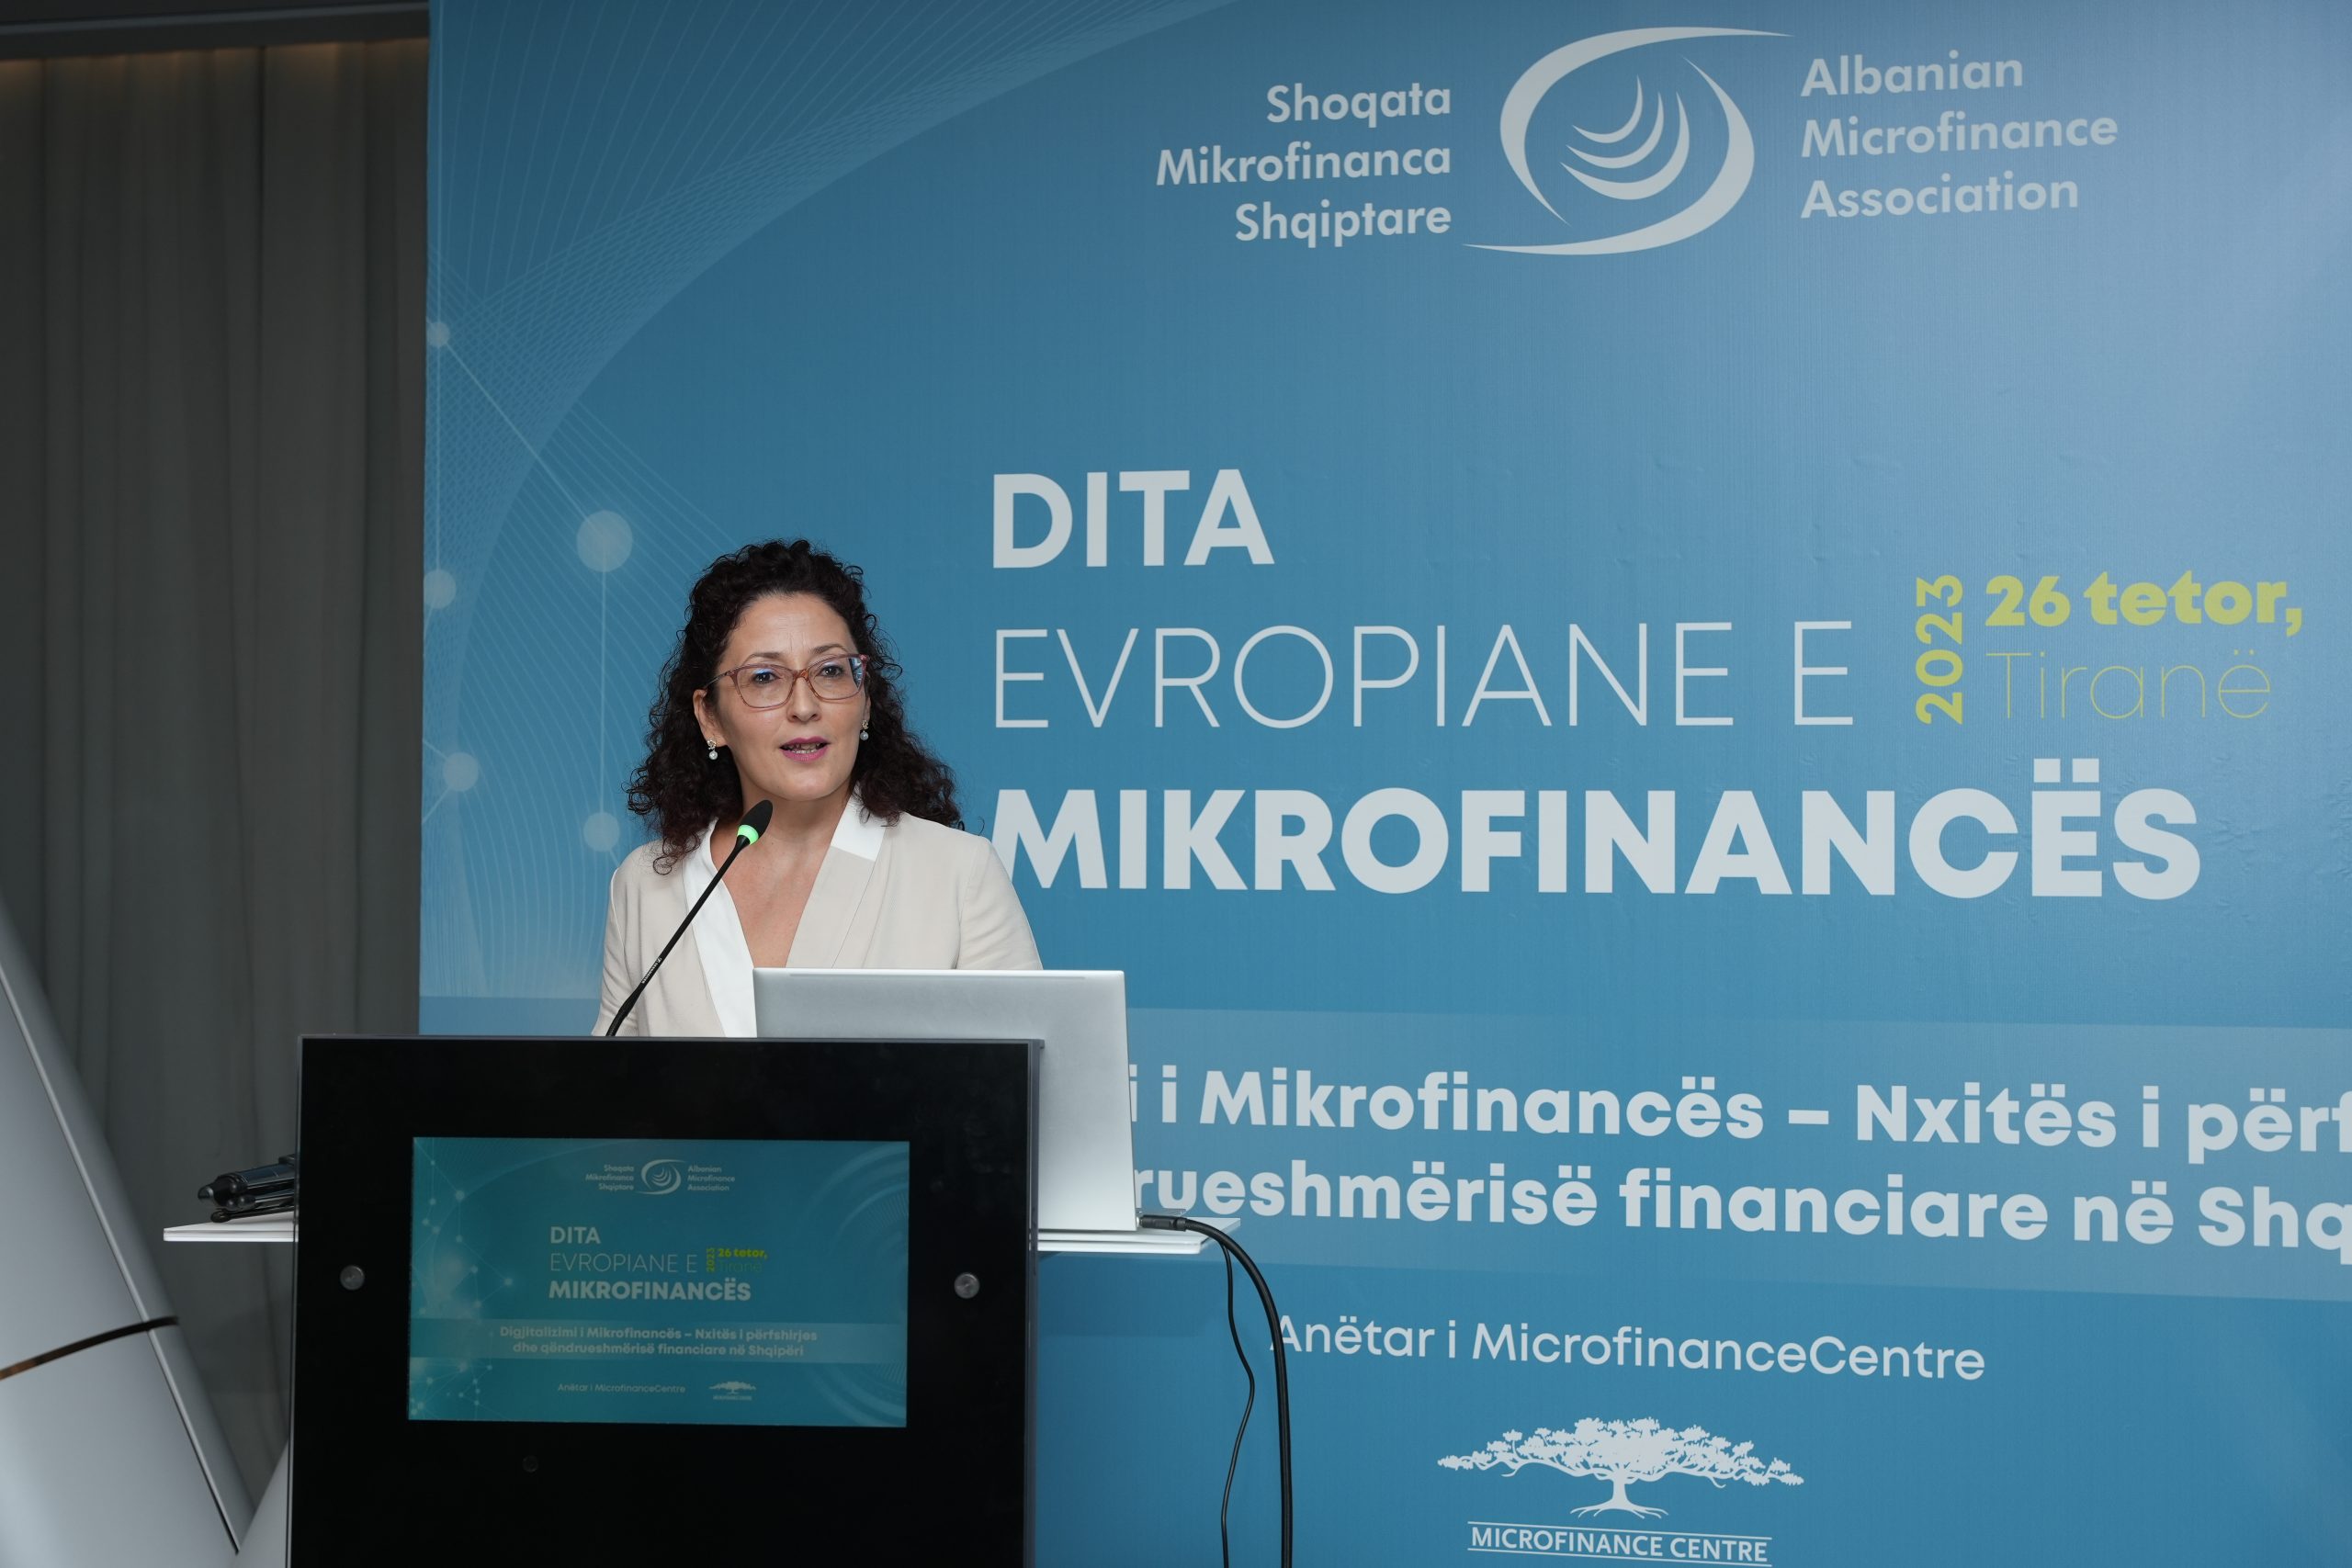 Digjitalizimi i Mikrofinancës: Nxitës i përfshirjes dhe qëndrueshmërisë financiare në Shqipëri